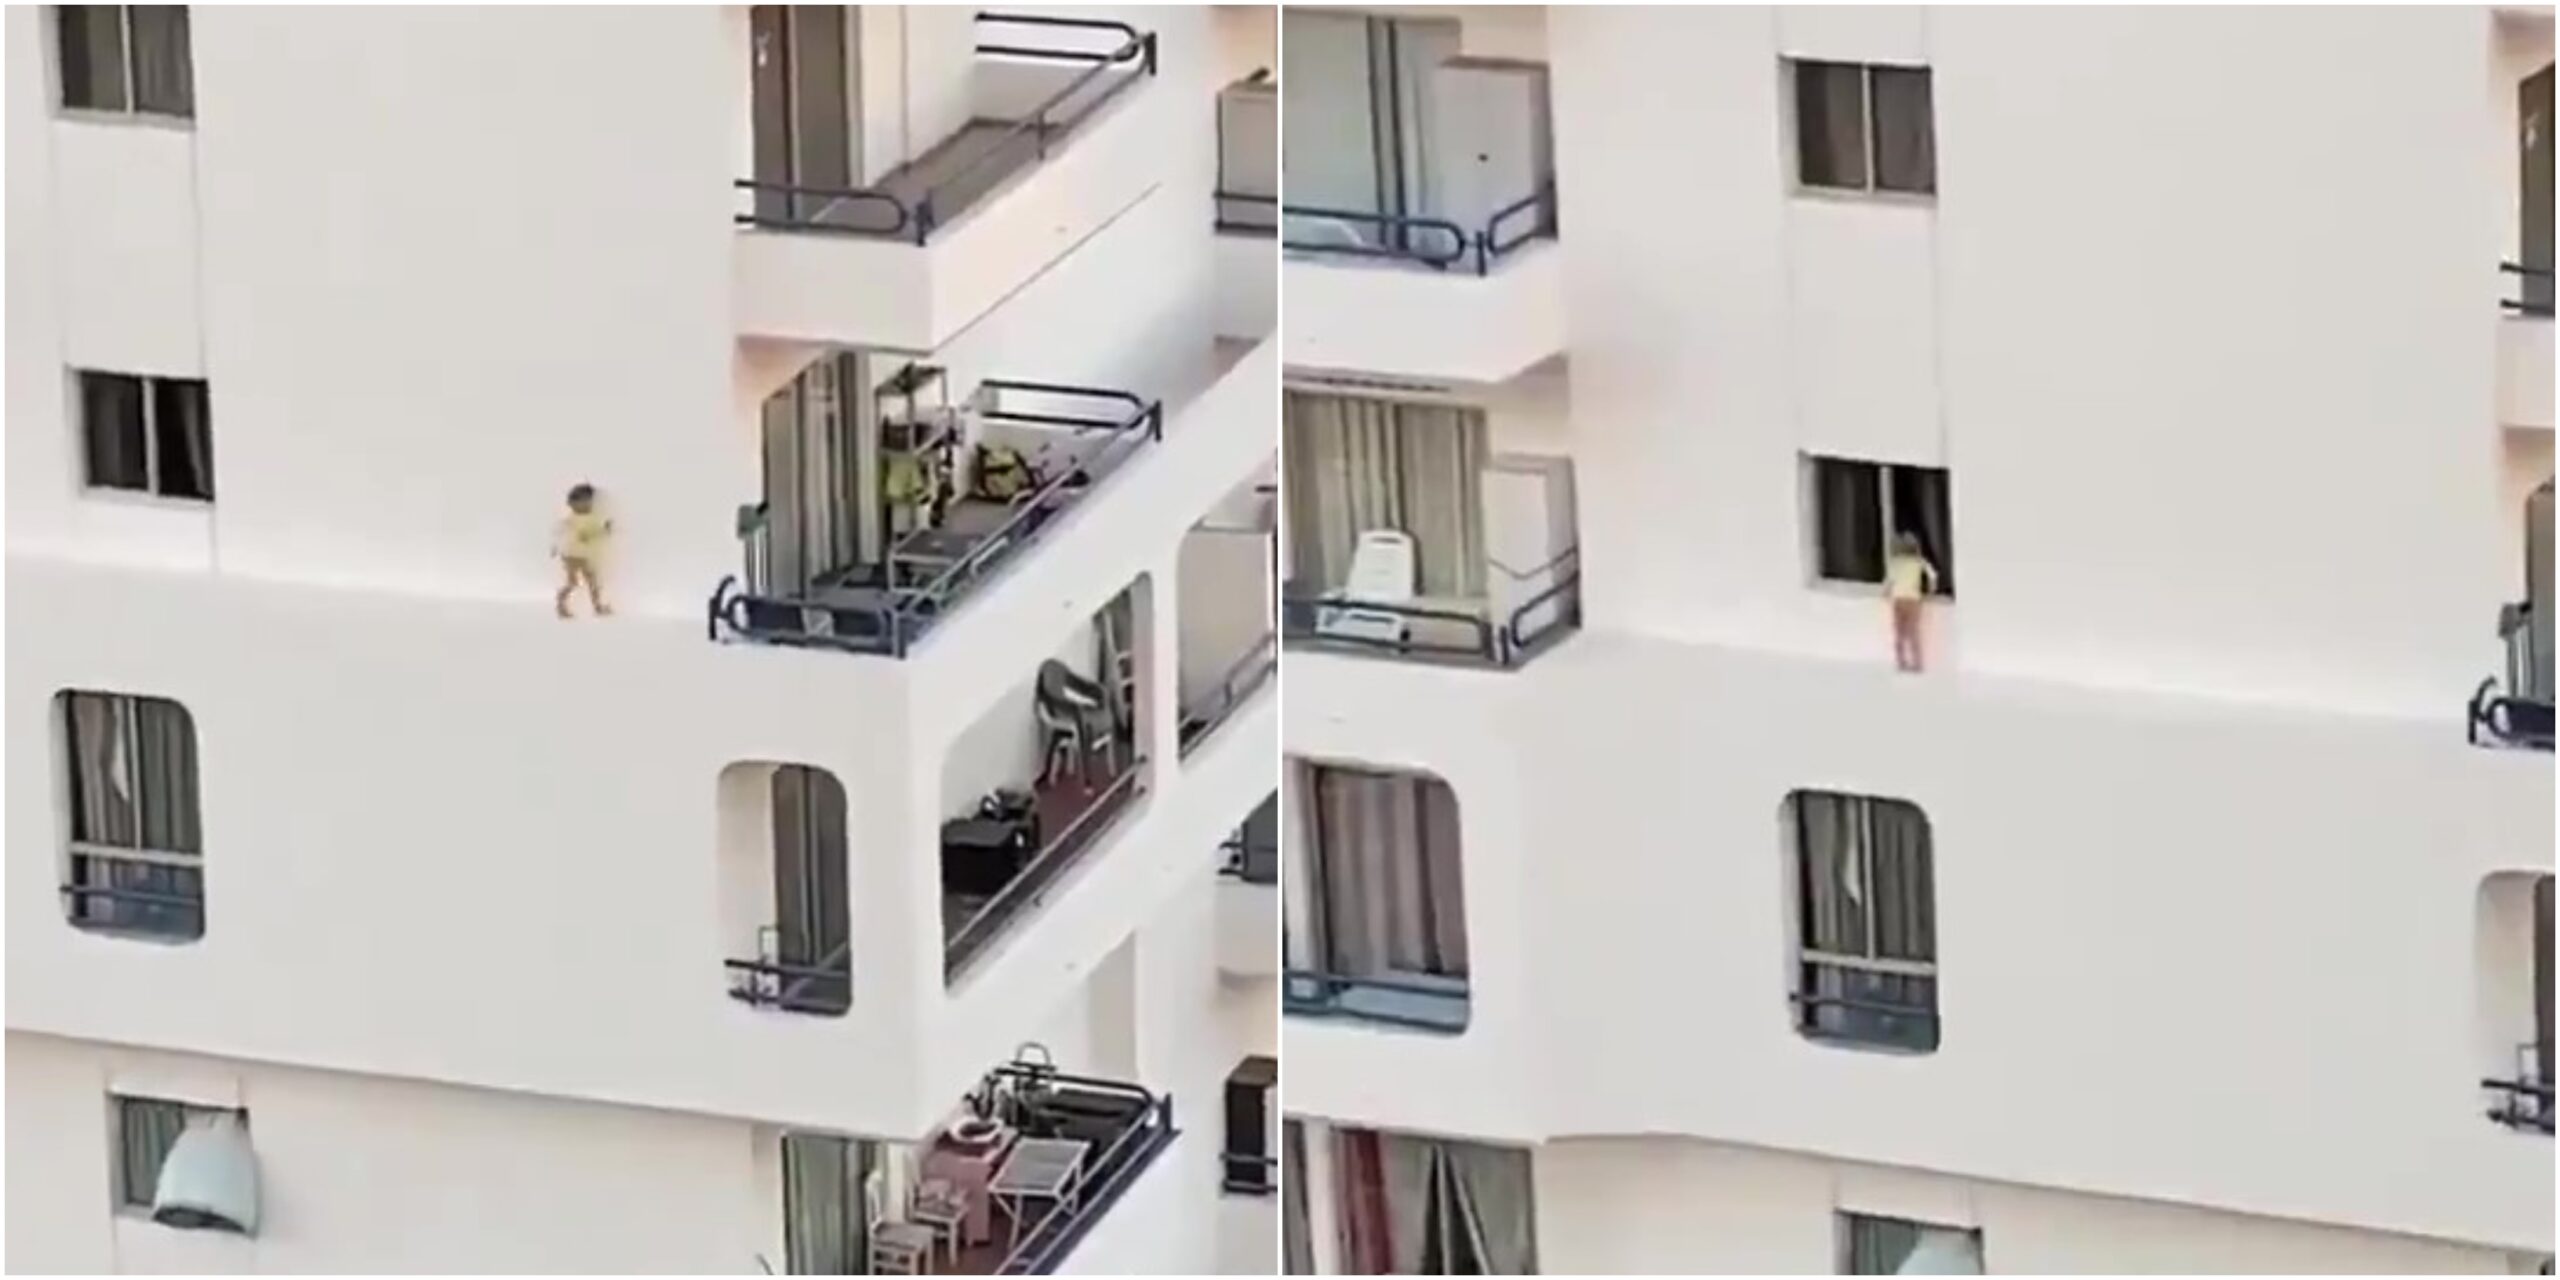 [VIDEO] Budak Dirakam Selamba Lari Tebing Apartmen, Tersilap Langkah Bawa Padah